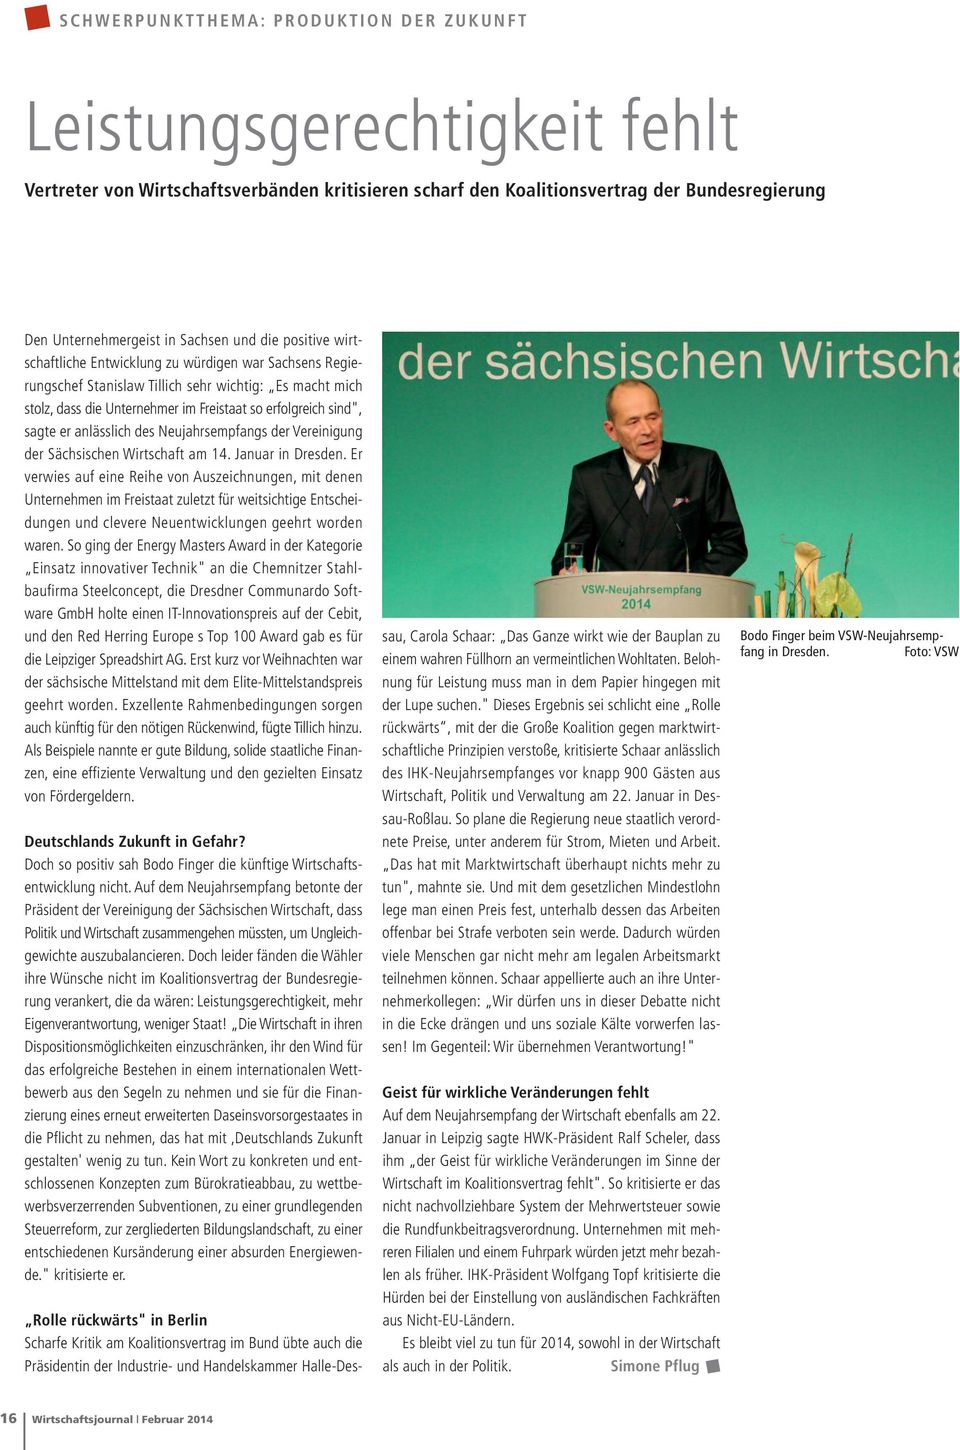 Freistaat so erfolgreich sind", sagte er anlässlich des Neujahrsempfangs der Vereinigung der Sächsischen Wirtschaft am 14. Januar in Dresden.